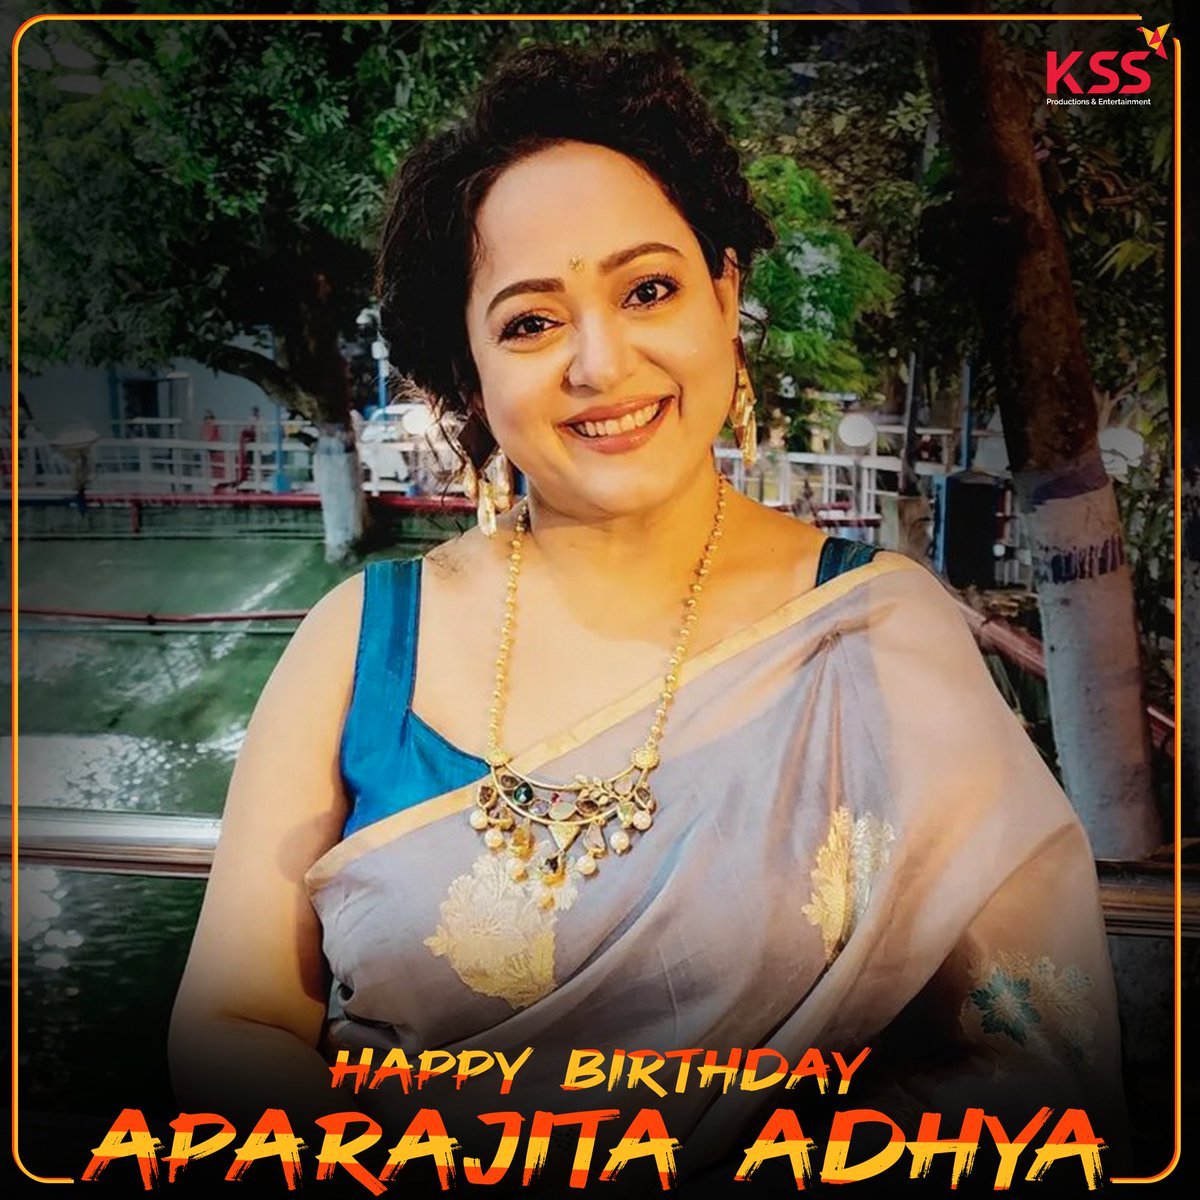 জন্মদিনের আন্তরিক শুভেচ্ছা ও ভালবাসা রইল আমাদের প্রিয় @AdhyaAparajita -র জন্য ❤

#HappyBirthday #AparajitaAdhya #KSS